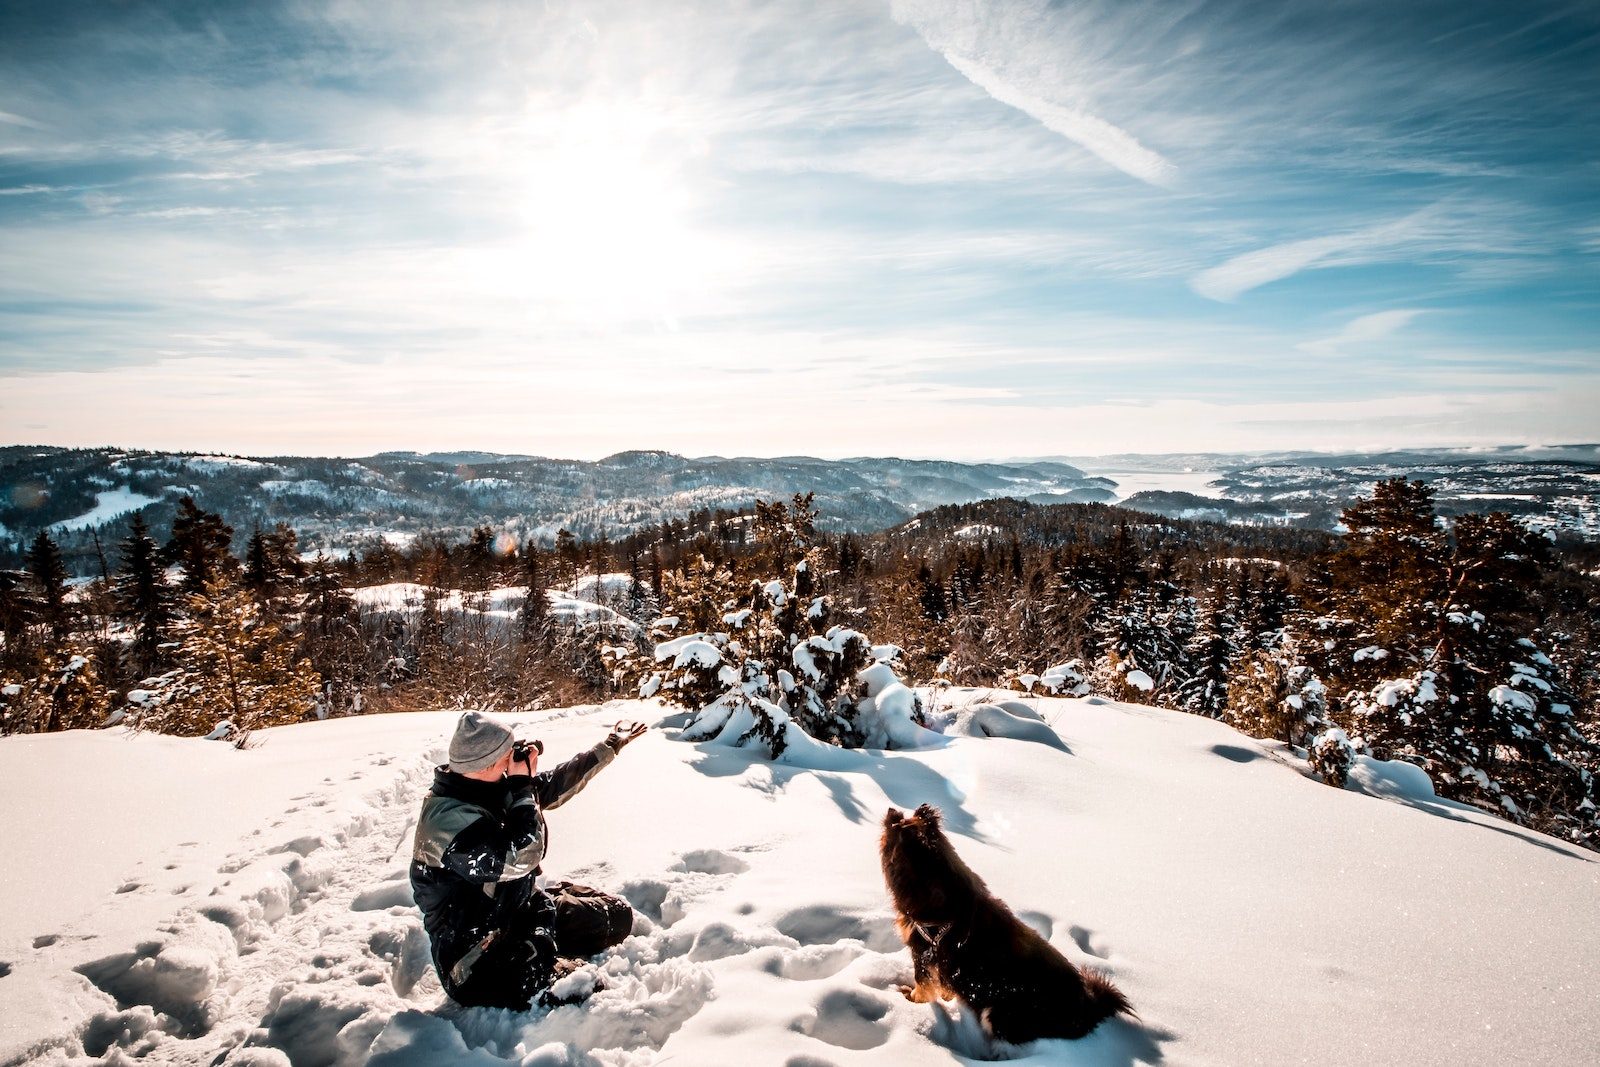 Mann macht Foto von einer weitläufigen Winterlandschaft aus Nadelbäumen während er neben einem Hund in der Sonne im Schnee sitzt